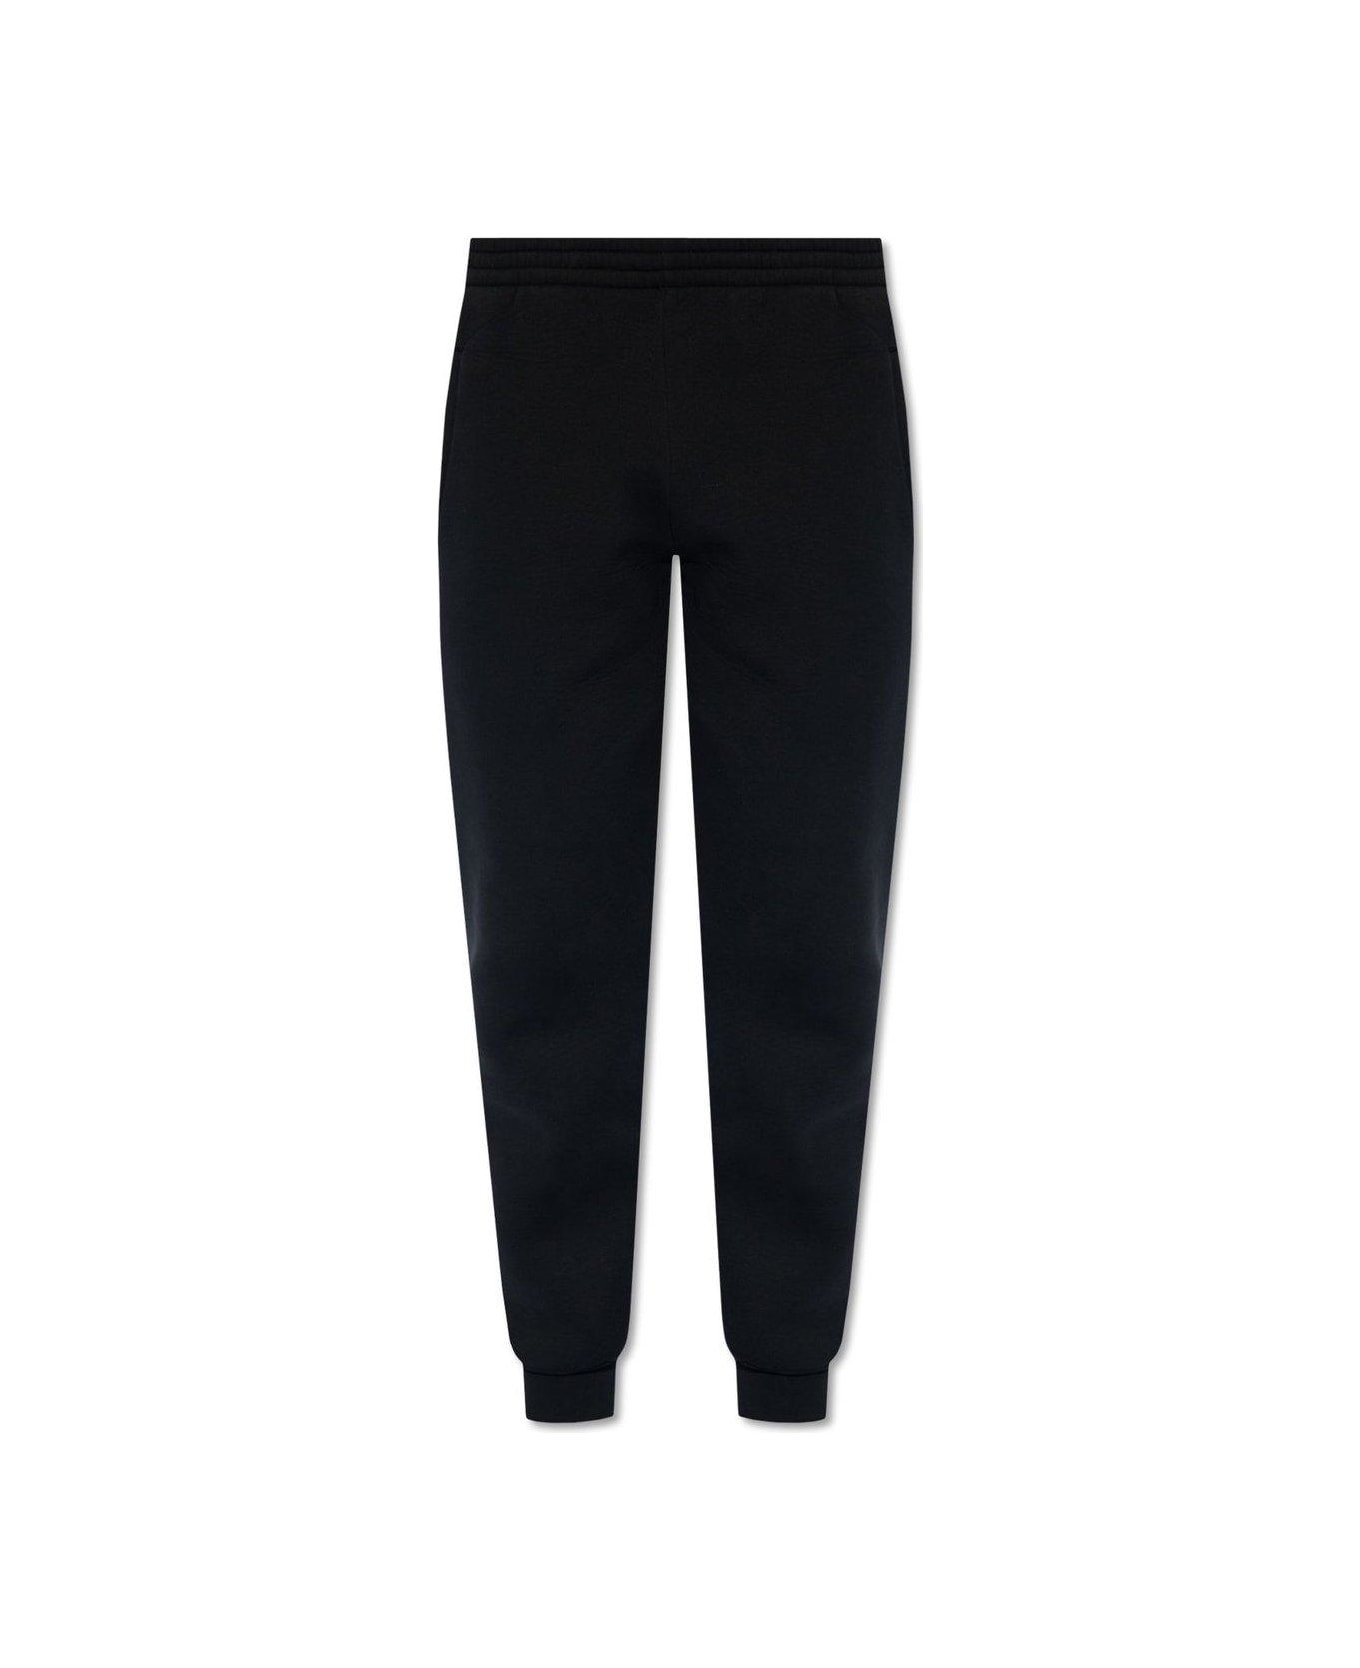 Balenciaga Elastic Waist Jogging Pants - Black